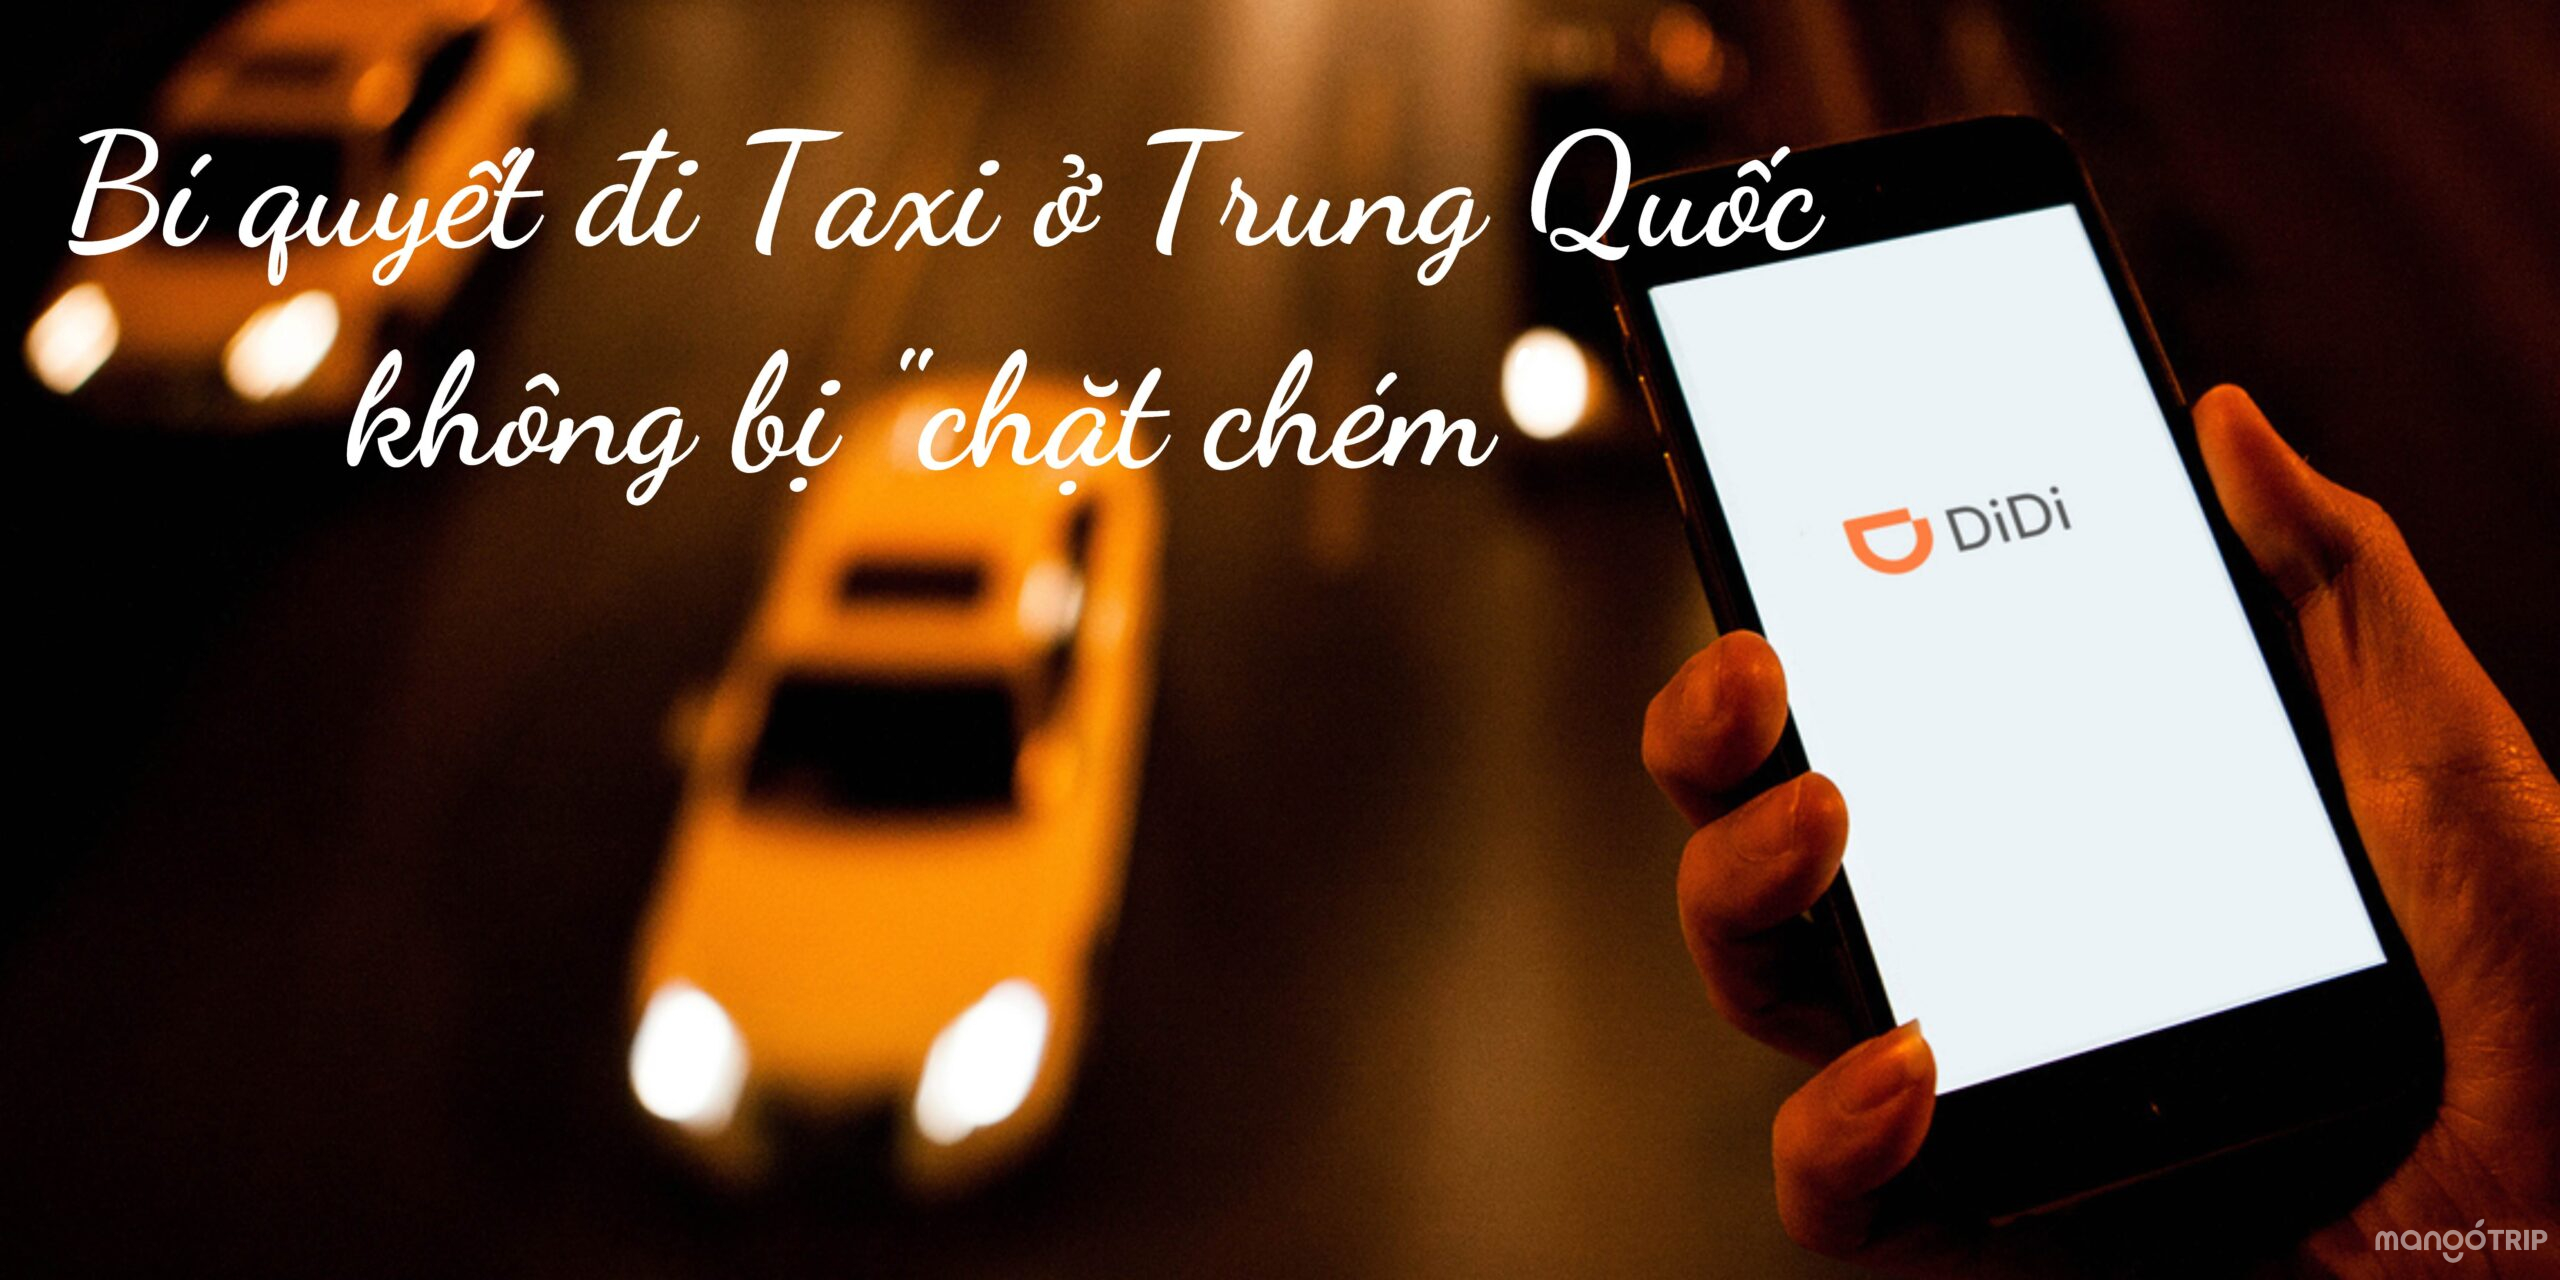 Bí quyết đi taxi ở Trung Quốc để không bị "chặt chém"